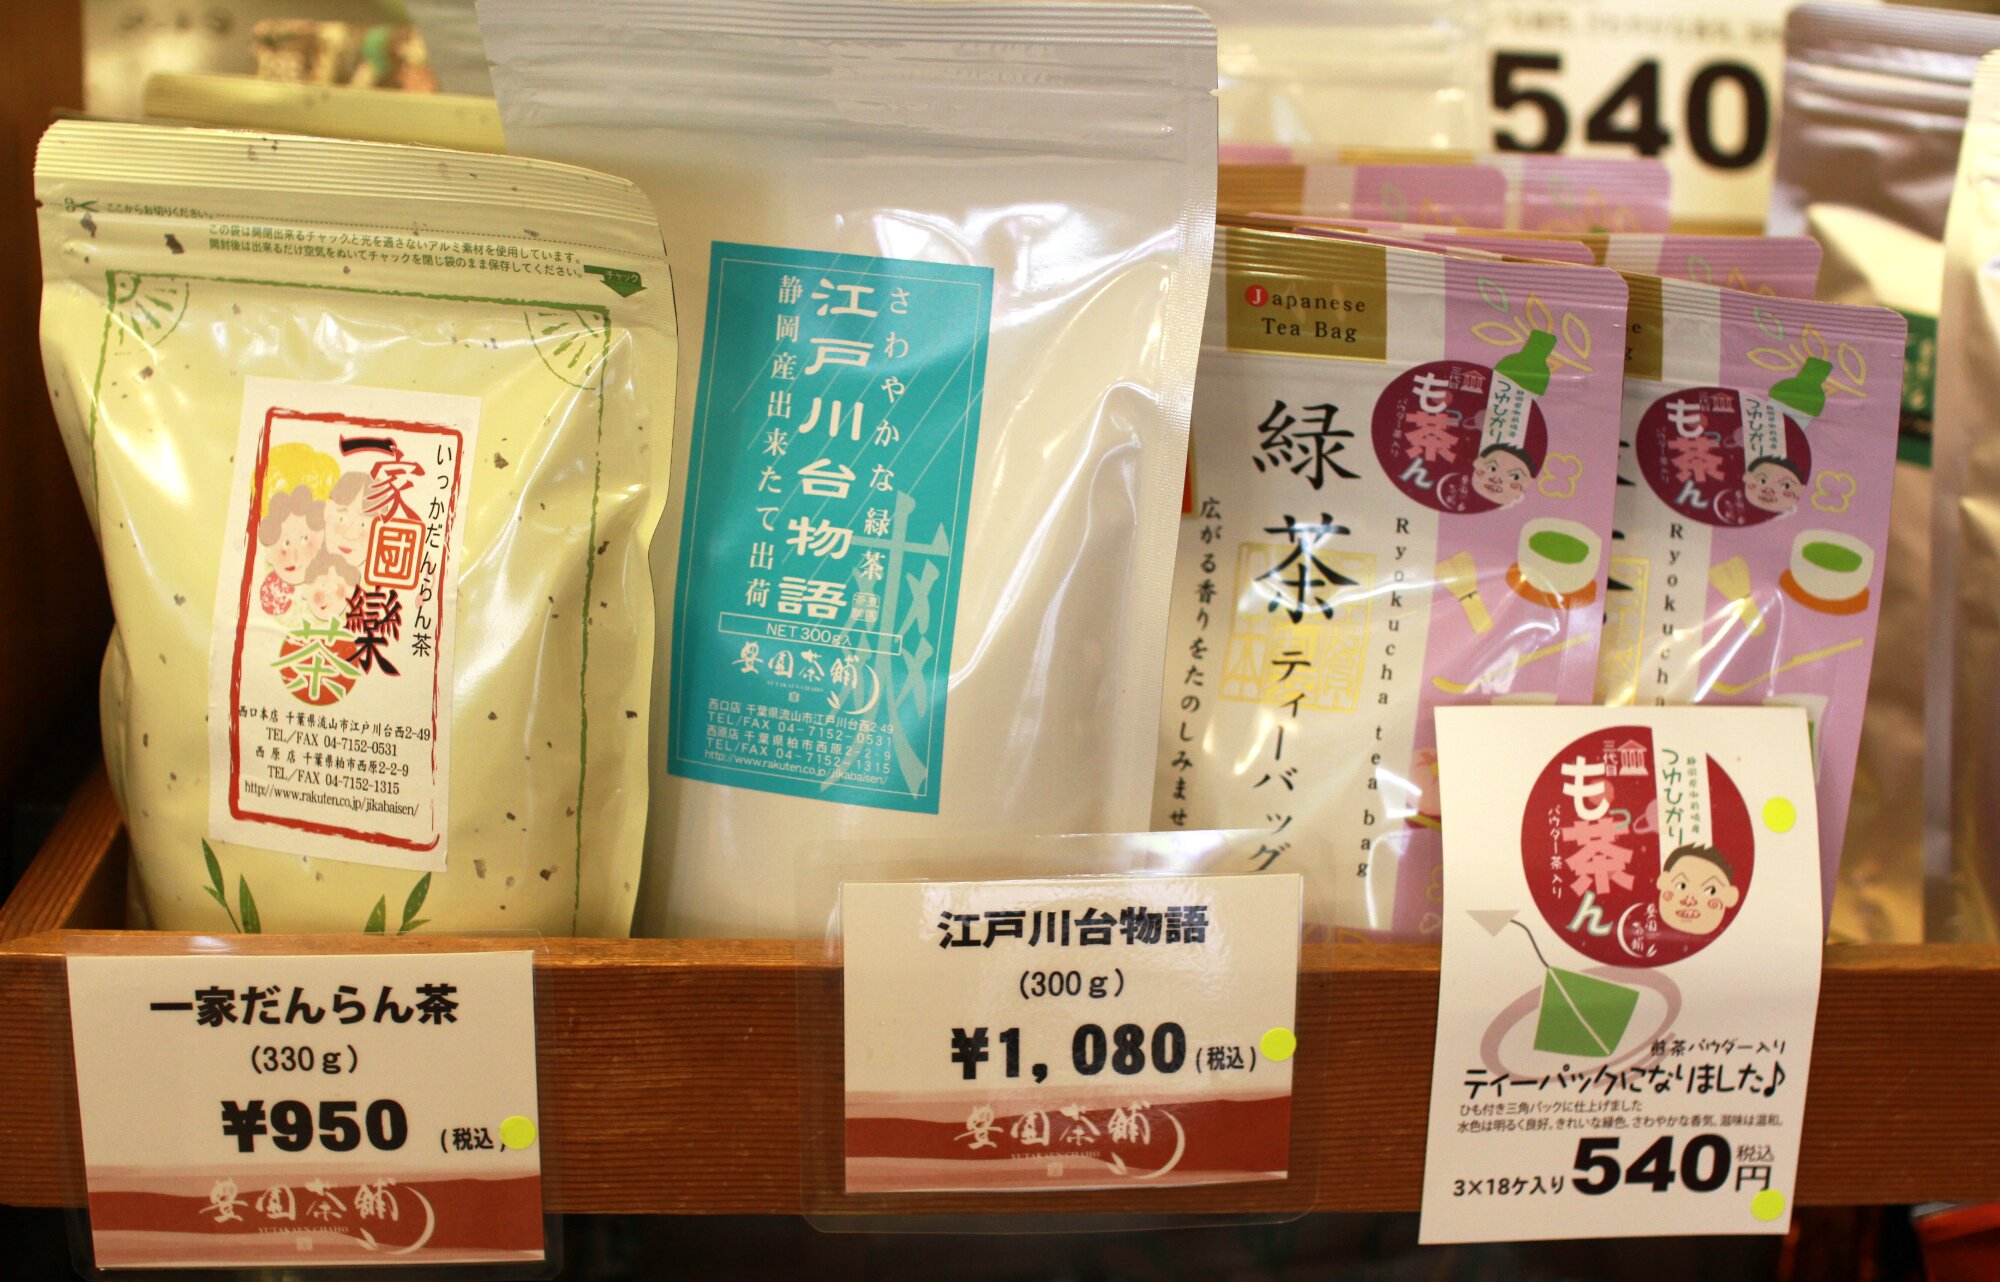 最寄りの江戸川台駅の名前がついたお茶。さっぱりとした味わいとのこと。